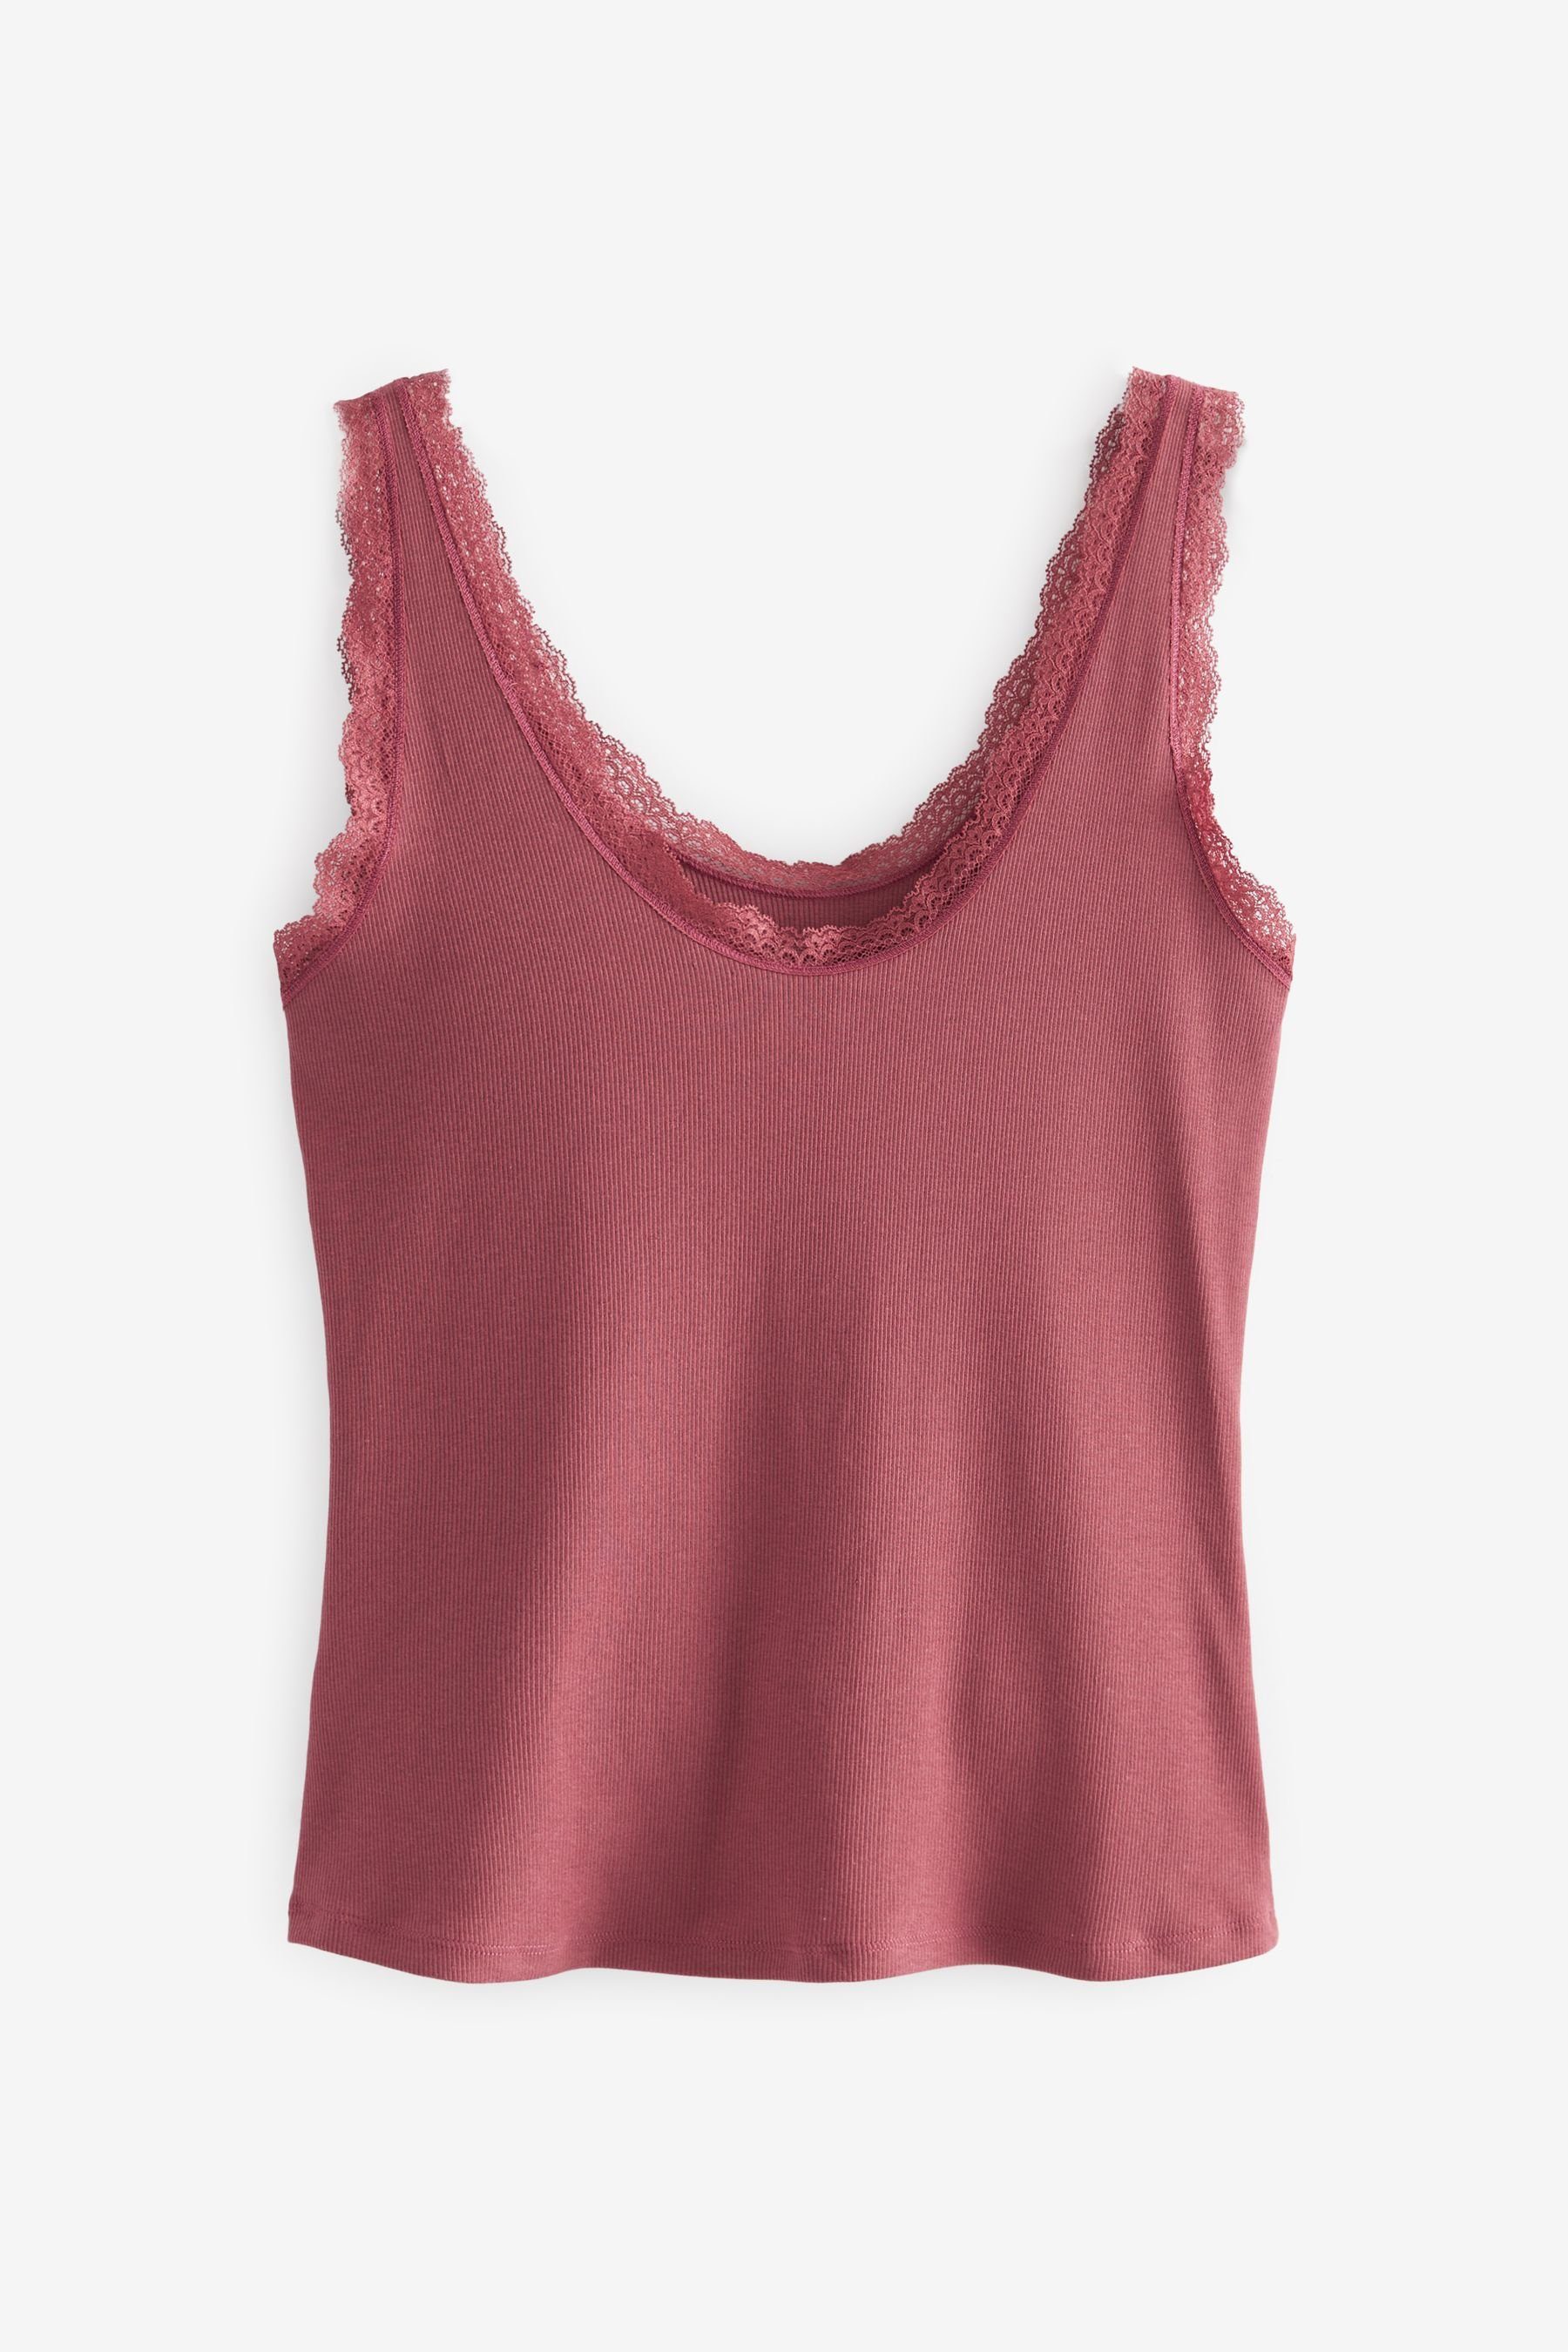 Next Unterhemd Grey/Rose Spitzenbesatz, 2er-Pack mit Trägerhemd Pink Geripptes (2-St)